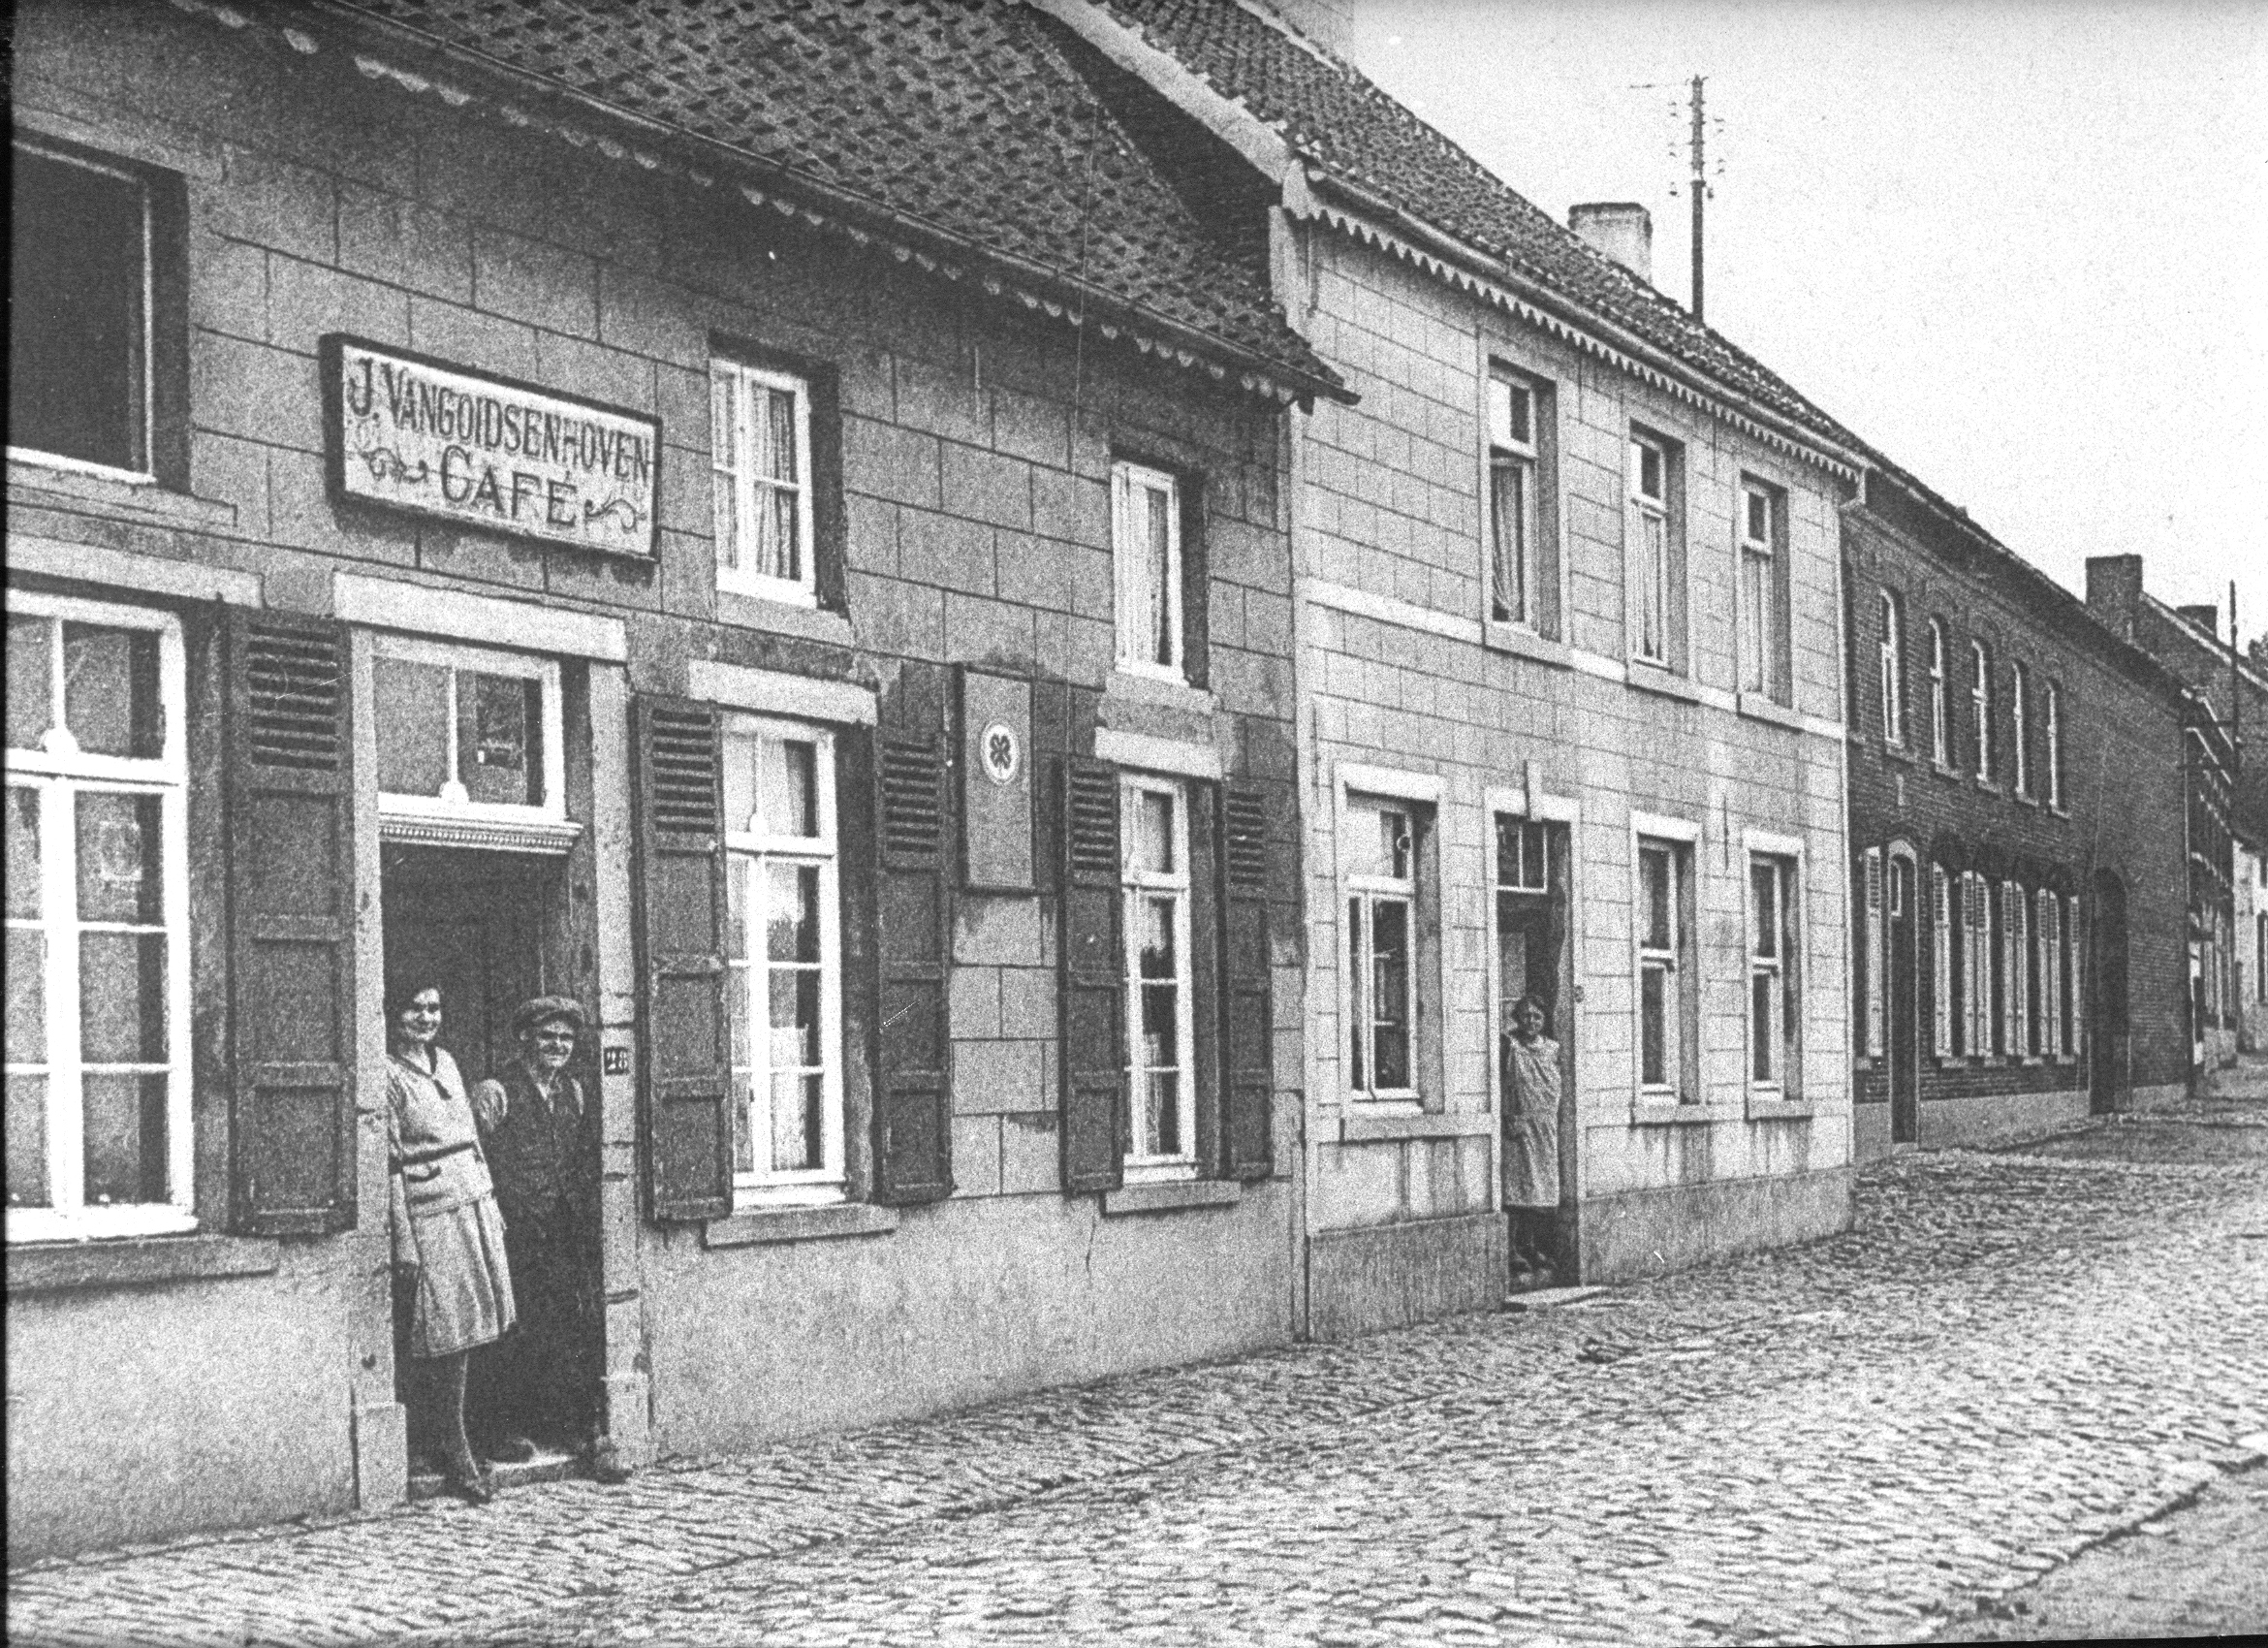 Dorpsstraat-1933-34.jpg - 2,81 MB